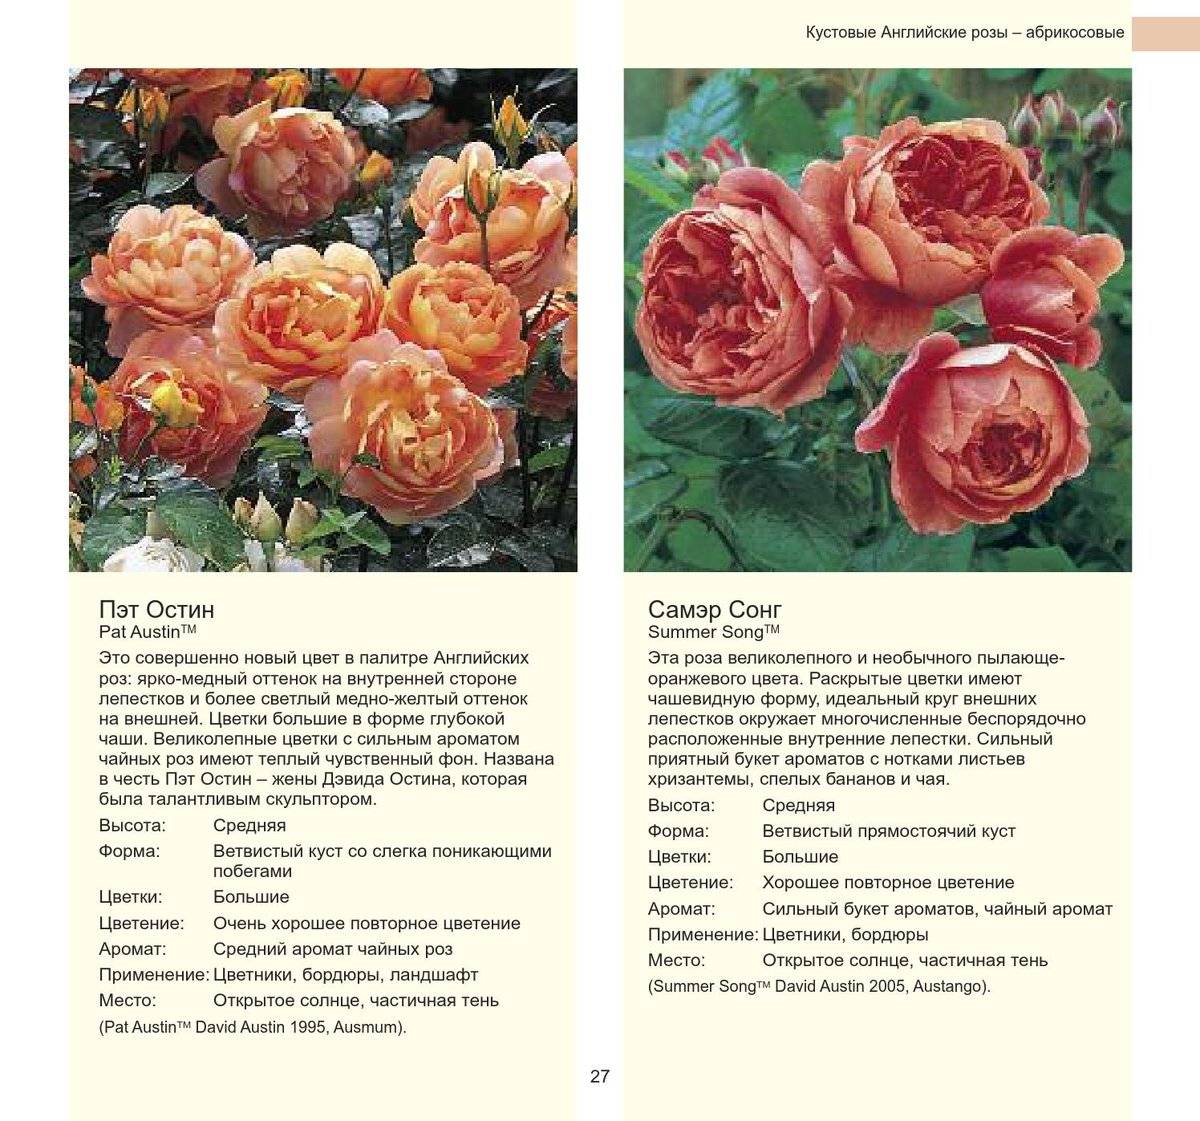 Роза анжела (angela) — характеристика сорта